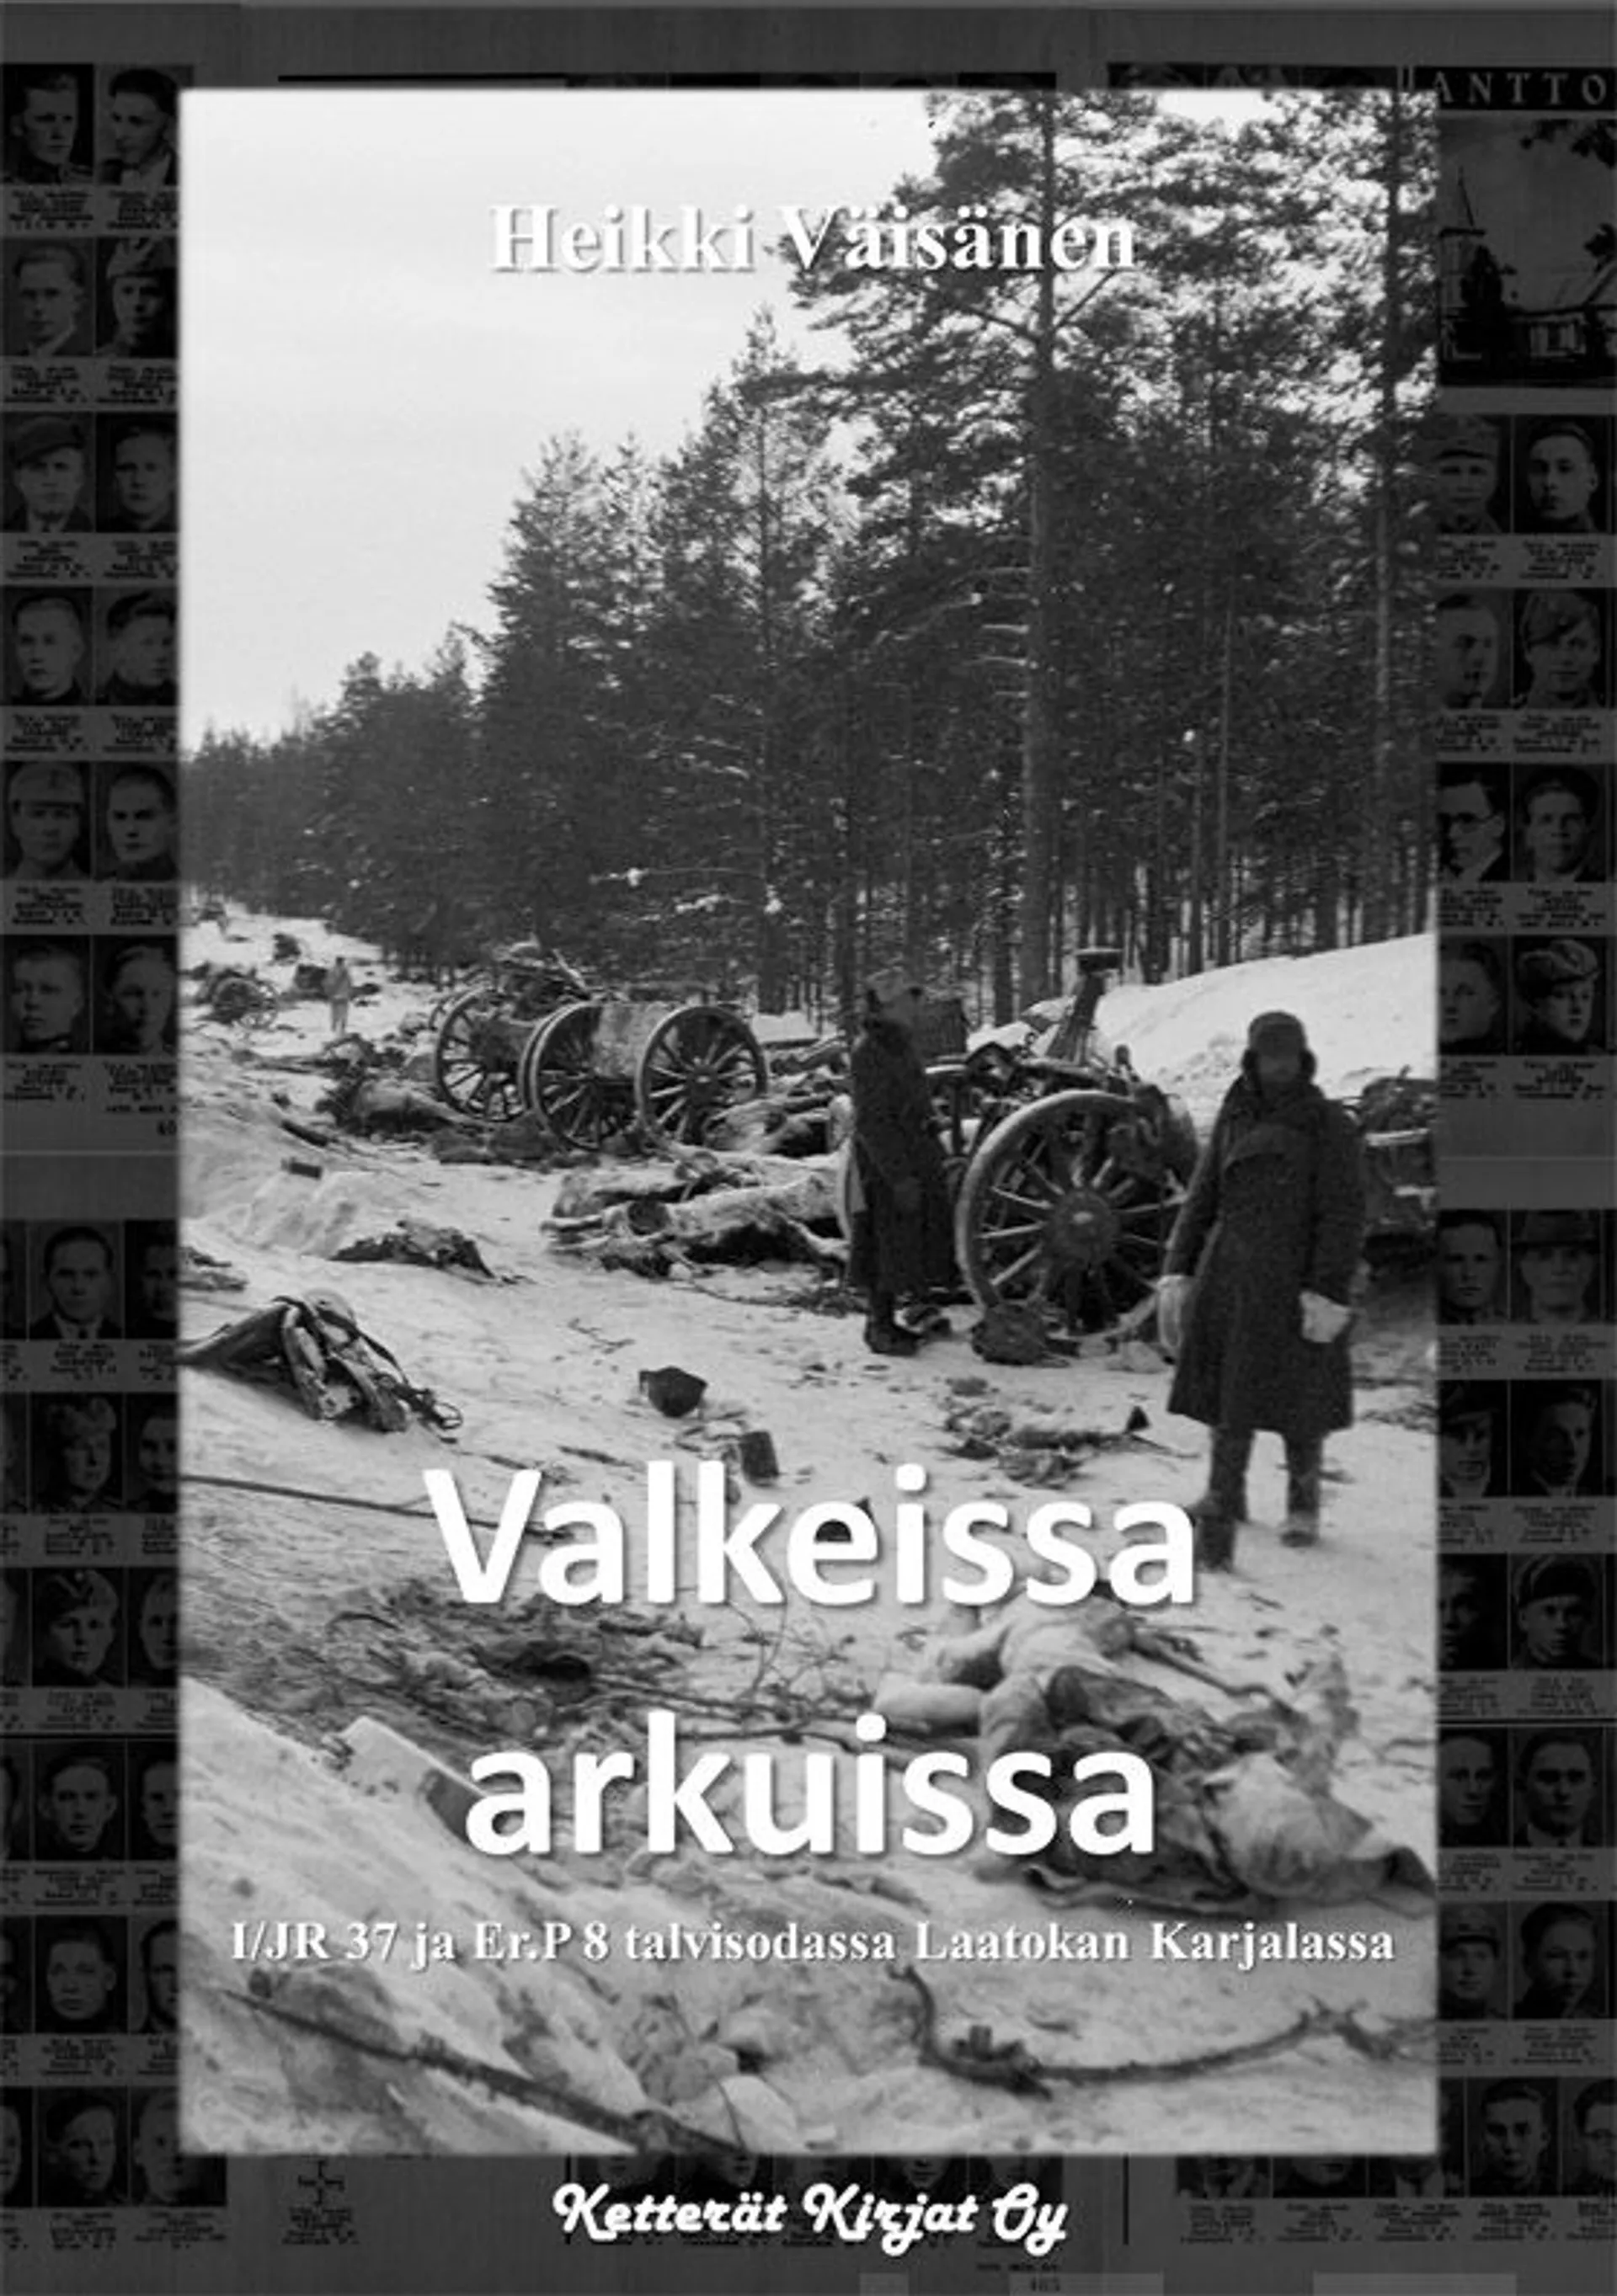 Väisänen, Valkeissa arkuissa - I/JR 37 ja Er.P 8 talvisodassa Laatokan Karjalassa